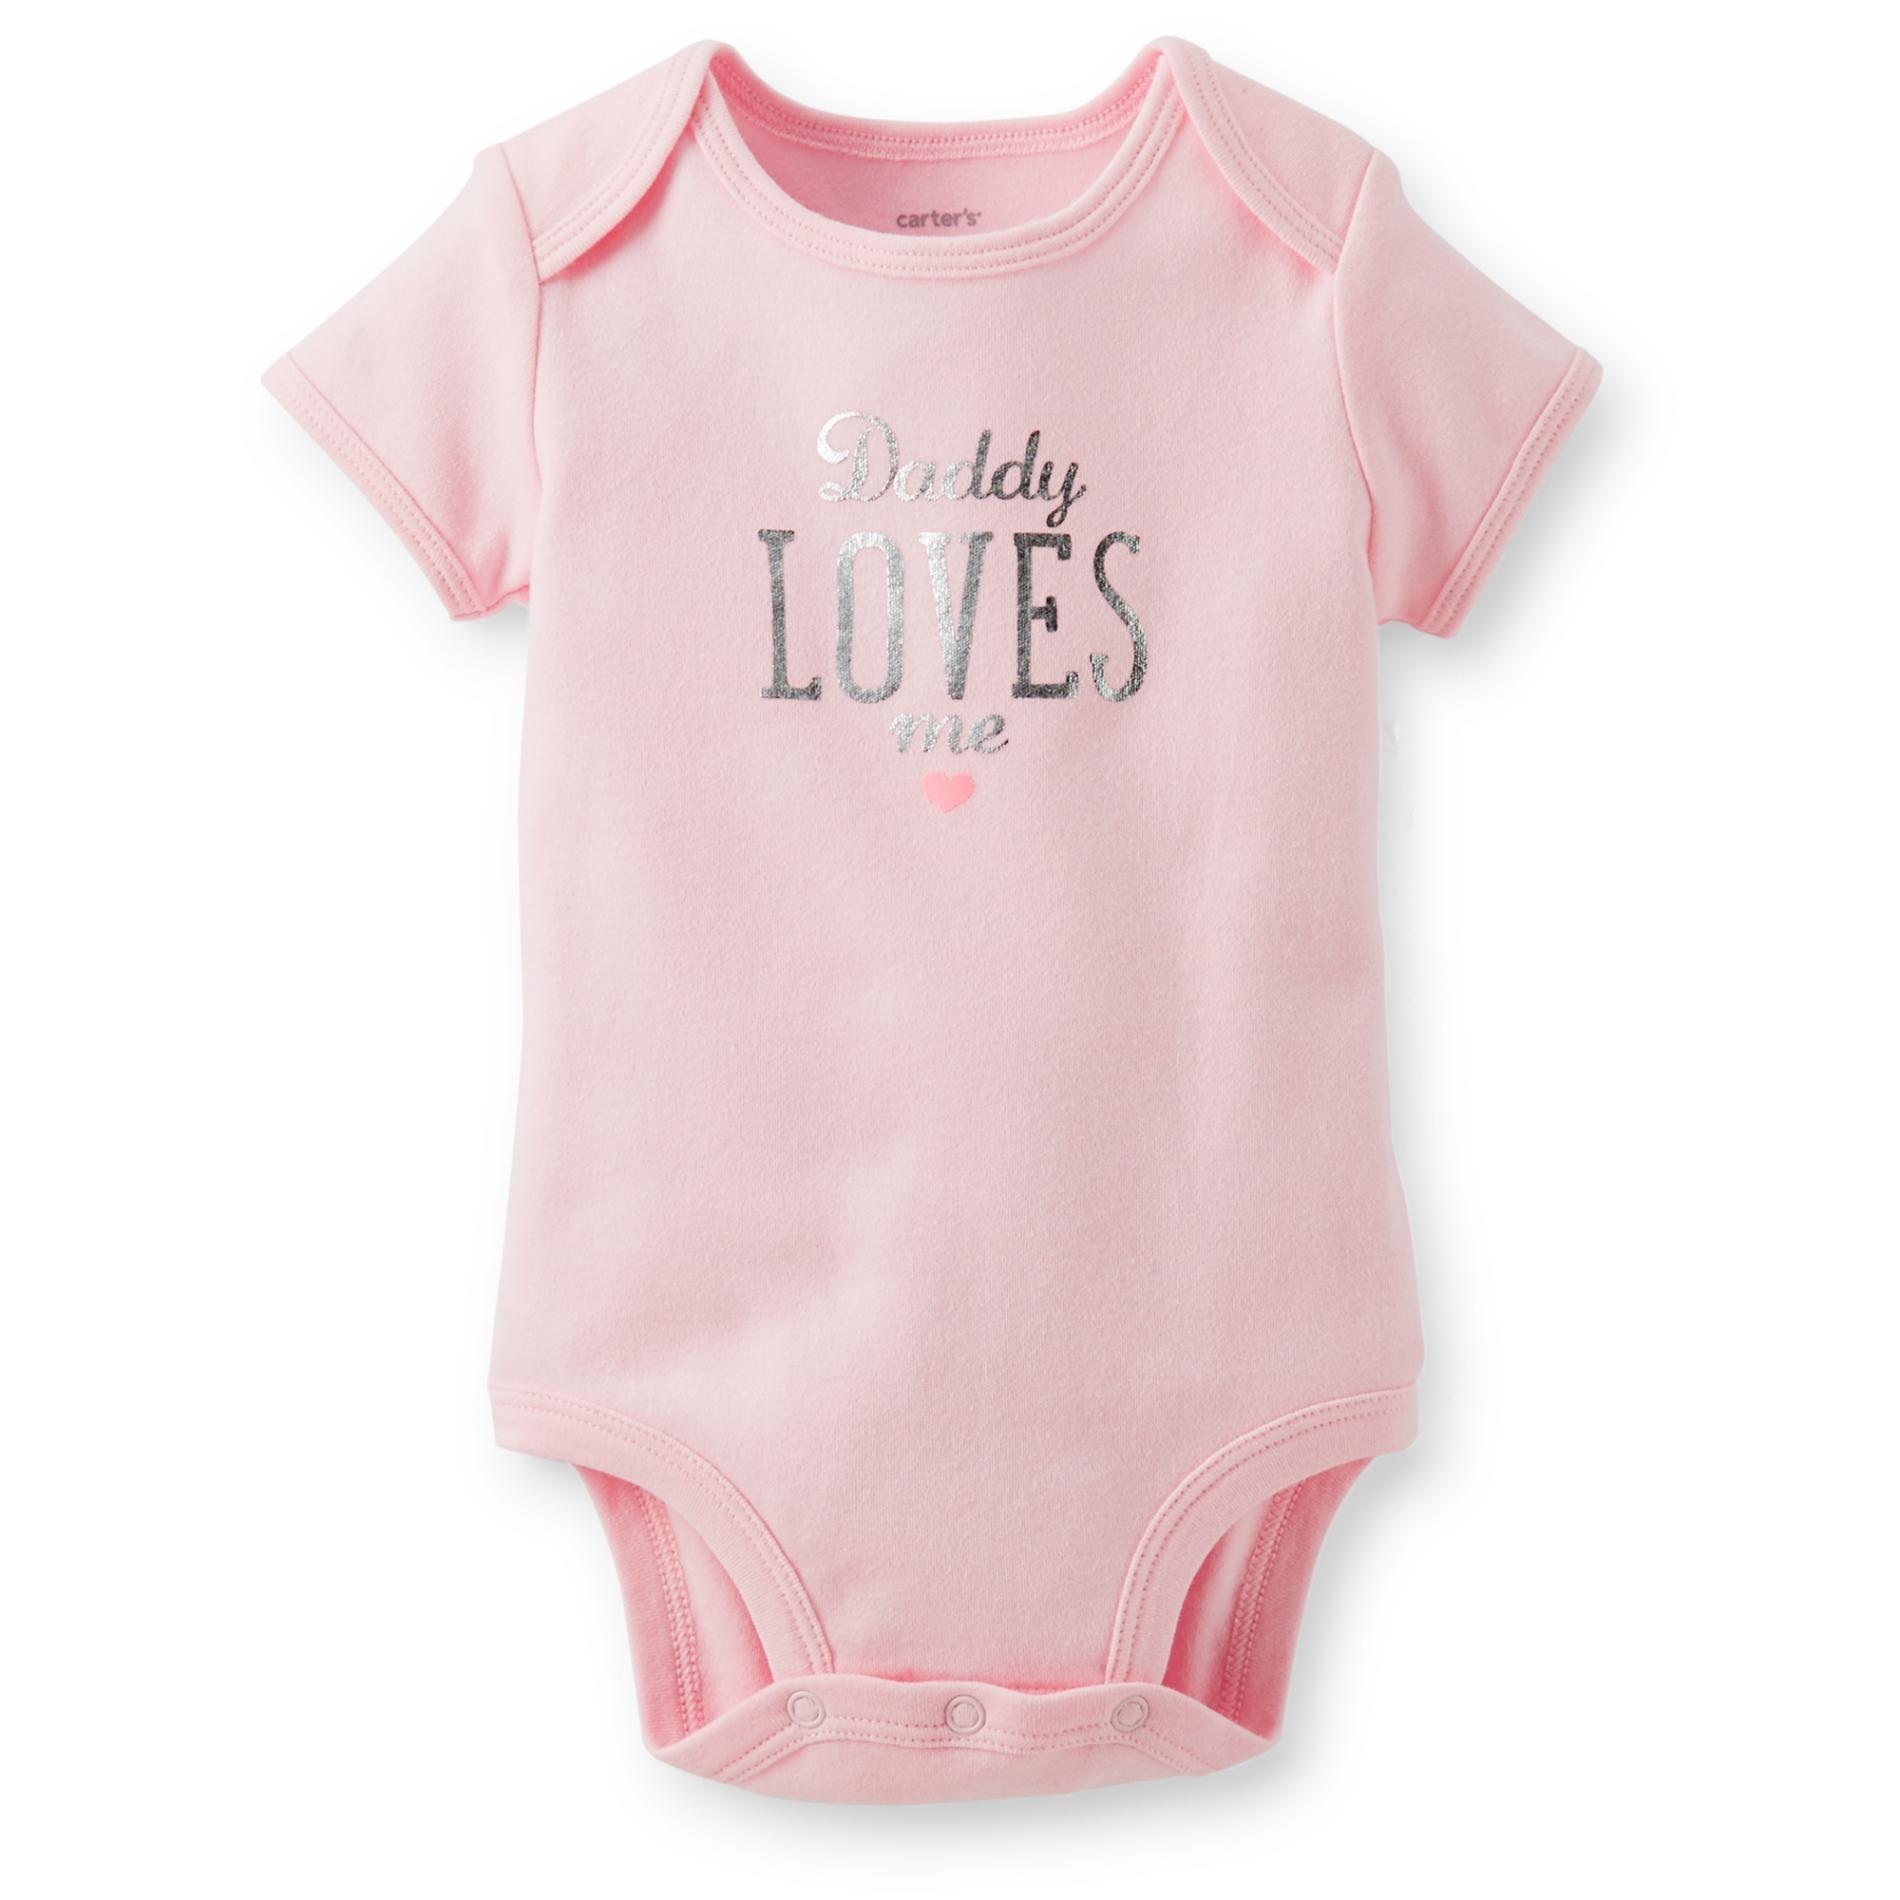 Carter's Newborn & Infant Girl's Short-Sleeve Bodysuit - Daddy Loves Me